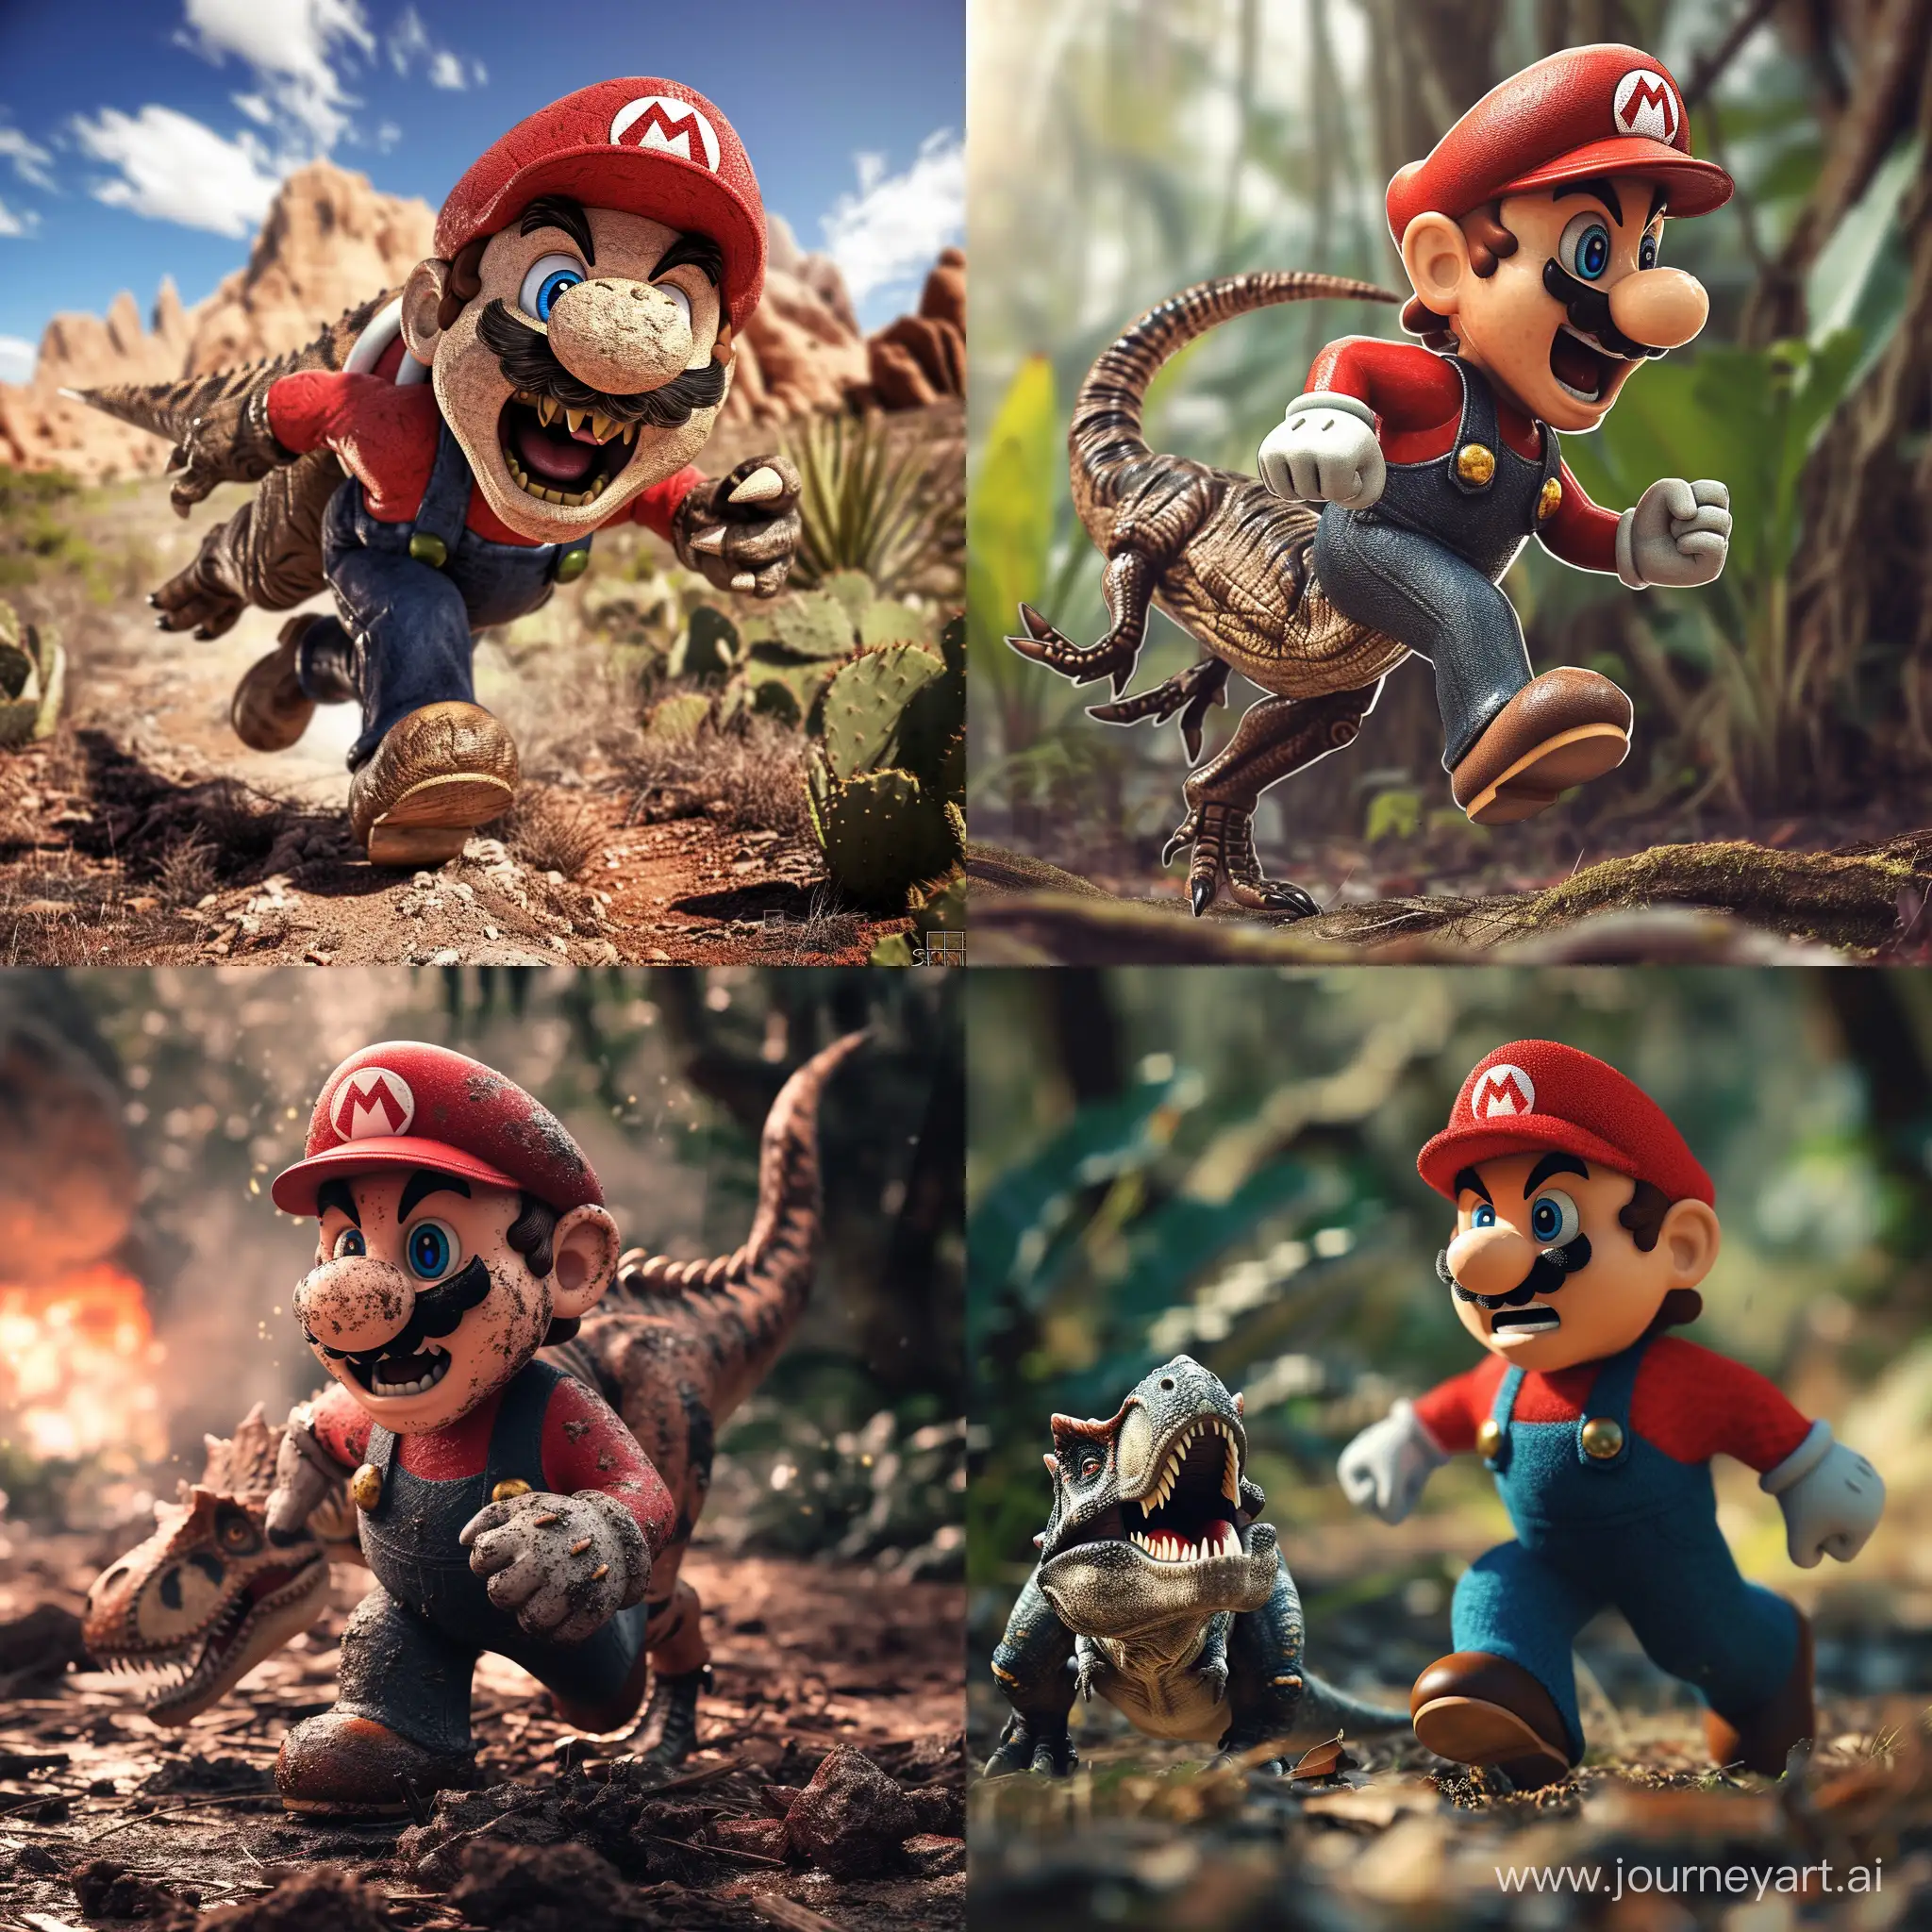 Mario-Dinosaur-Overlay-on-Stunning-Photo-Creative-Photoshop-Art